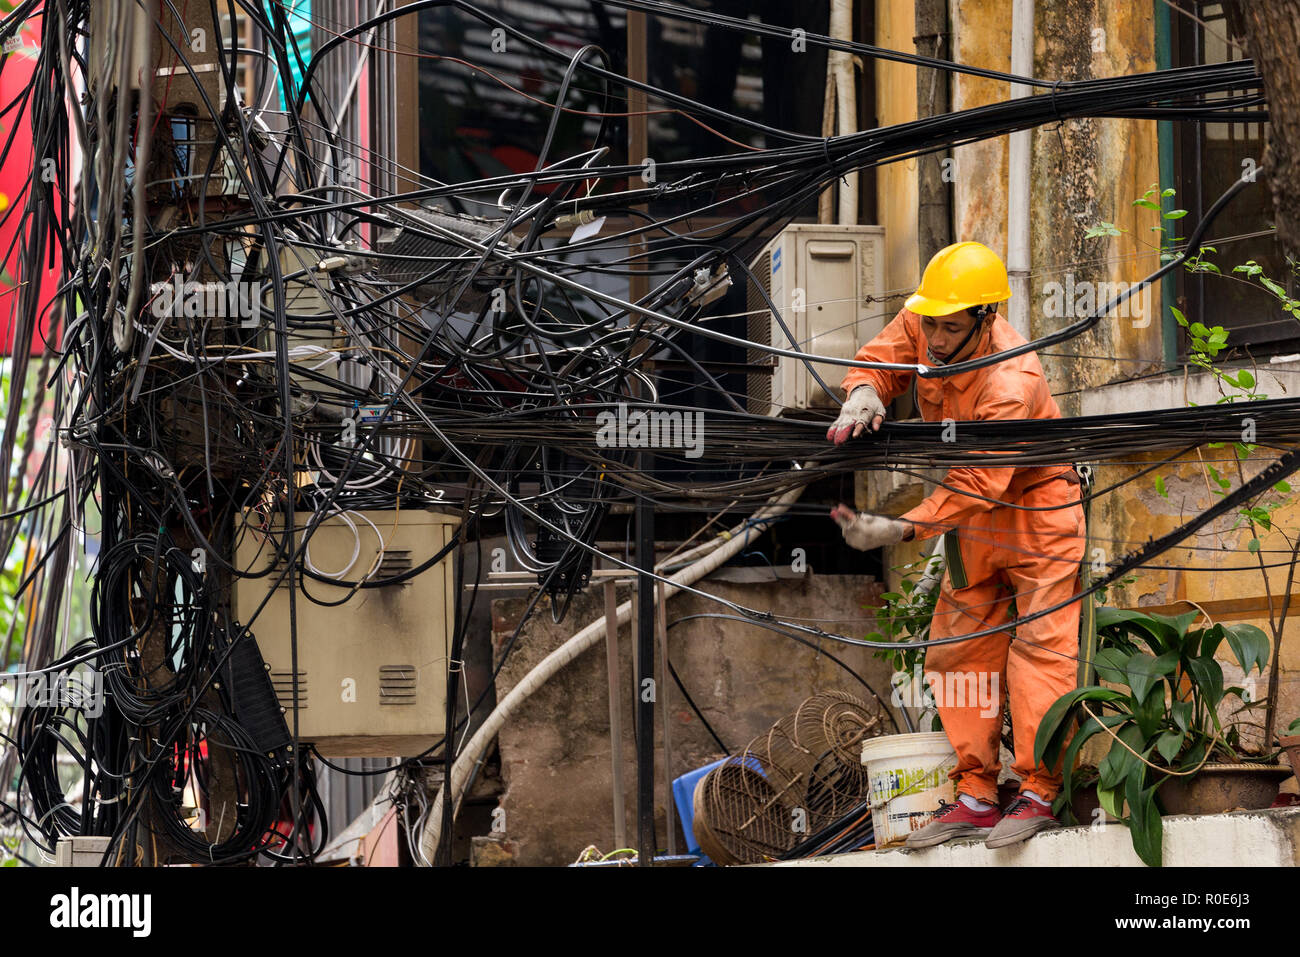 HANOI, Vietnam, 16 décembre 2014 : Un technicien est la réparation ou vérification de la réseau électrique en désordre dans la ville de Hanoi, Vietnam Banque D'Images